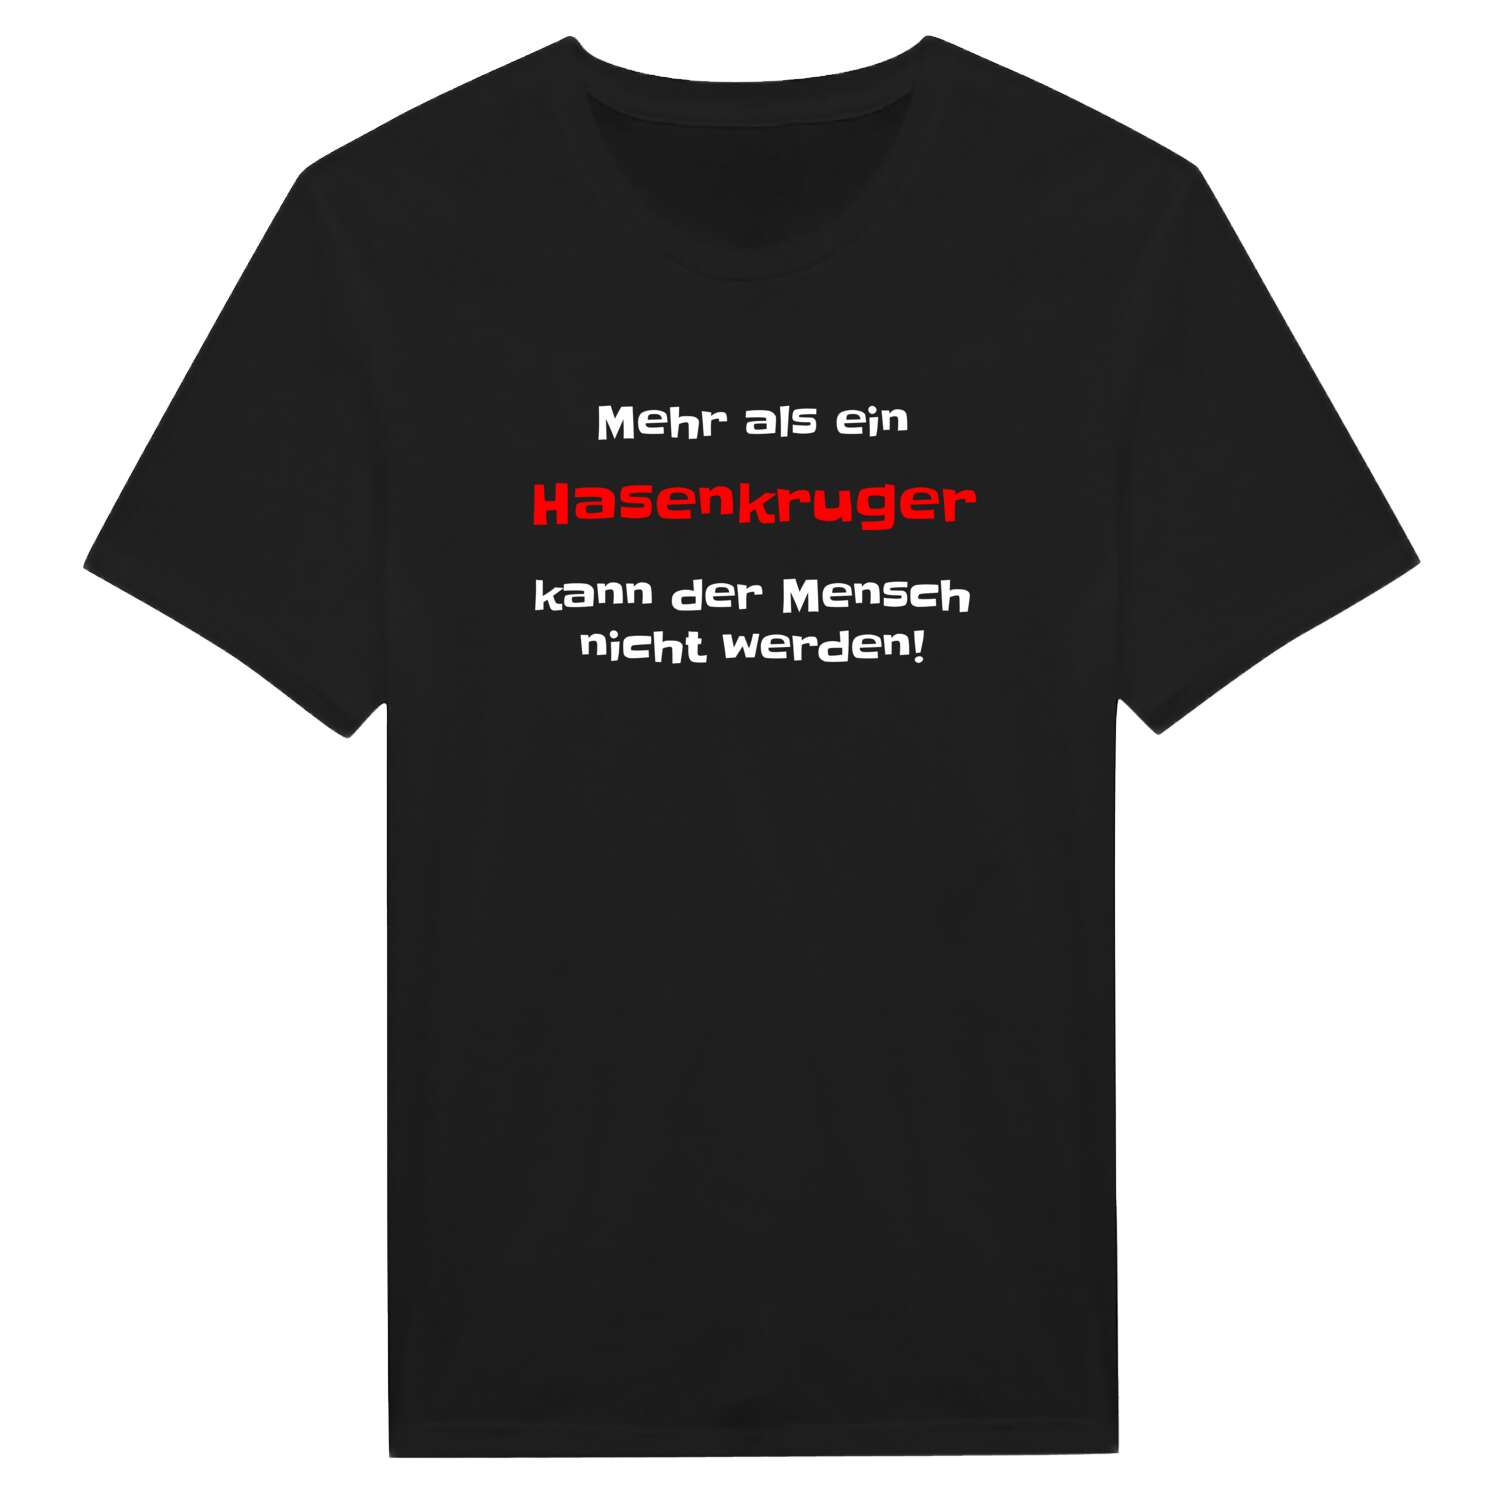 Hasenkrug T-Shirt »Mehr als ein«